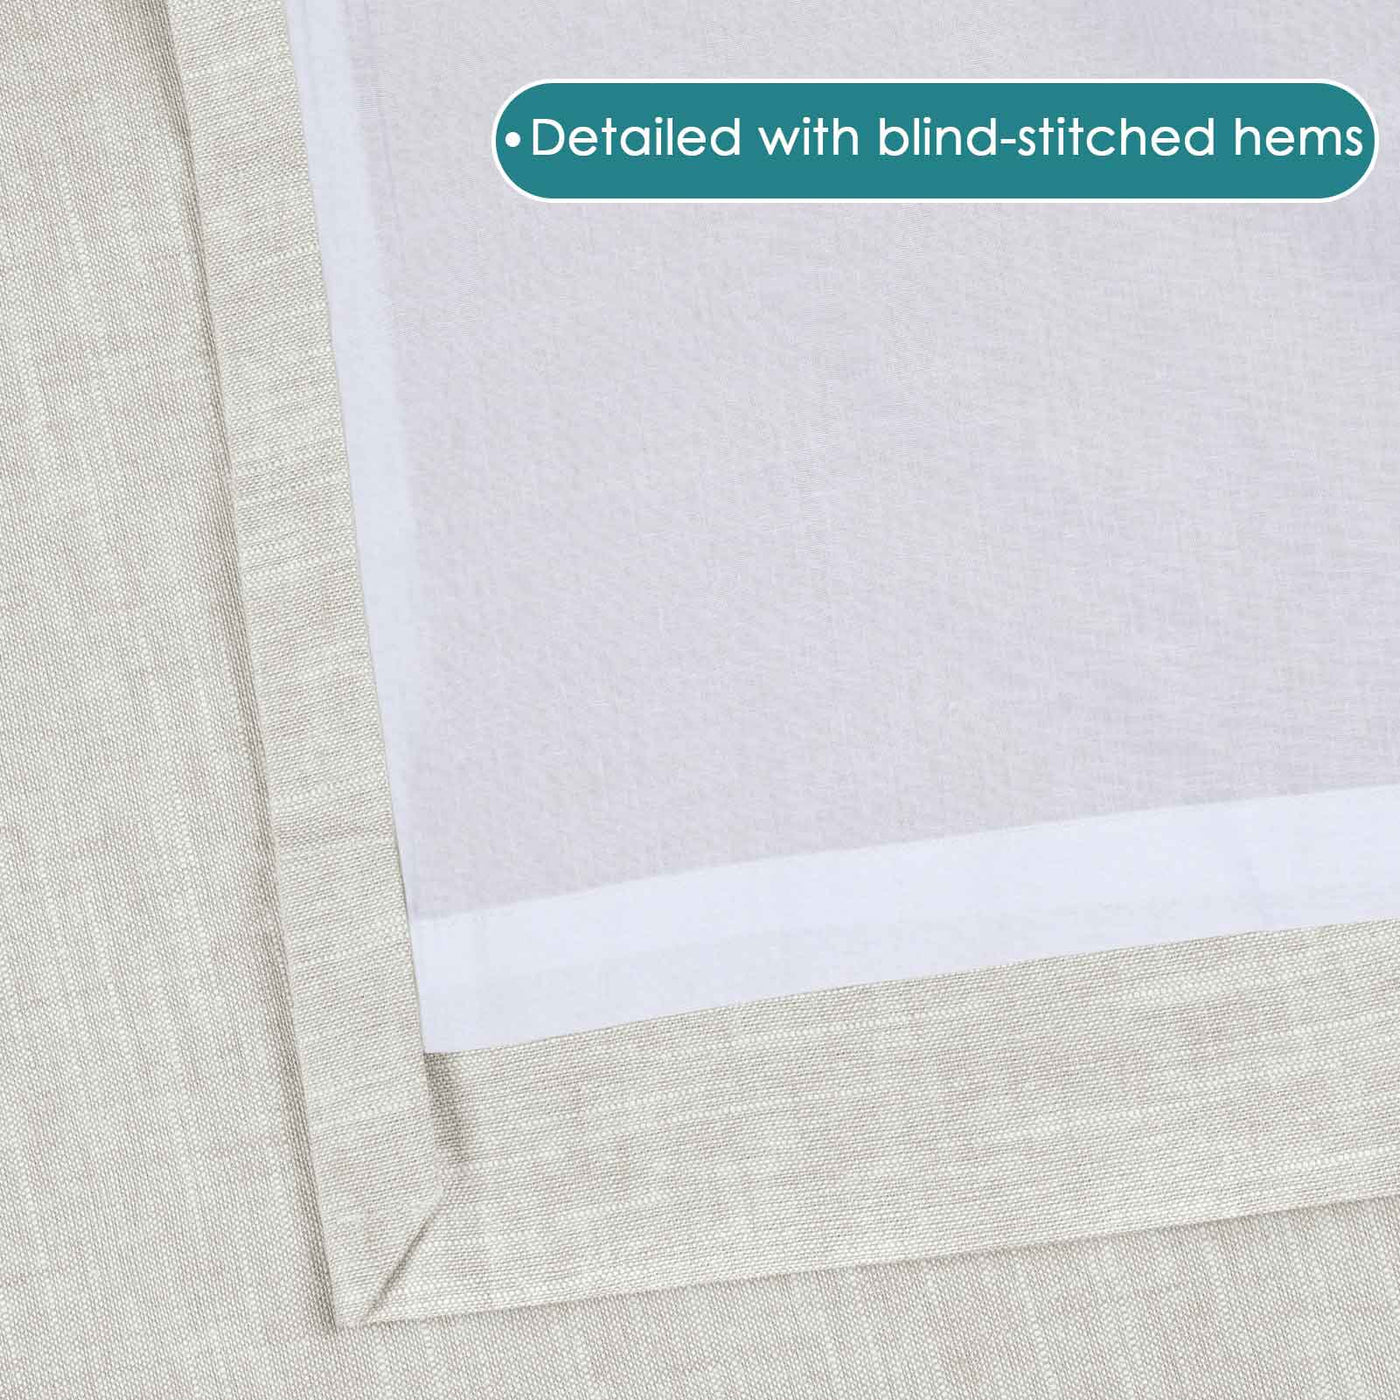 Jawara Luxury Linen Cotton Curtain Pleated